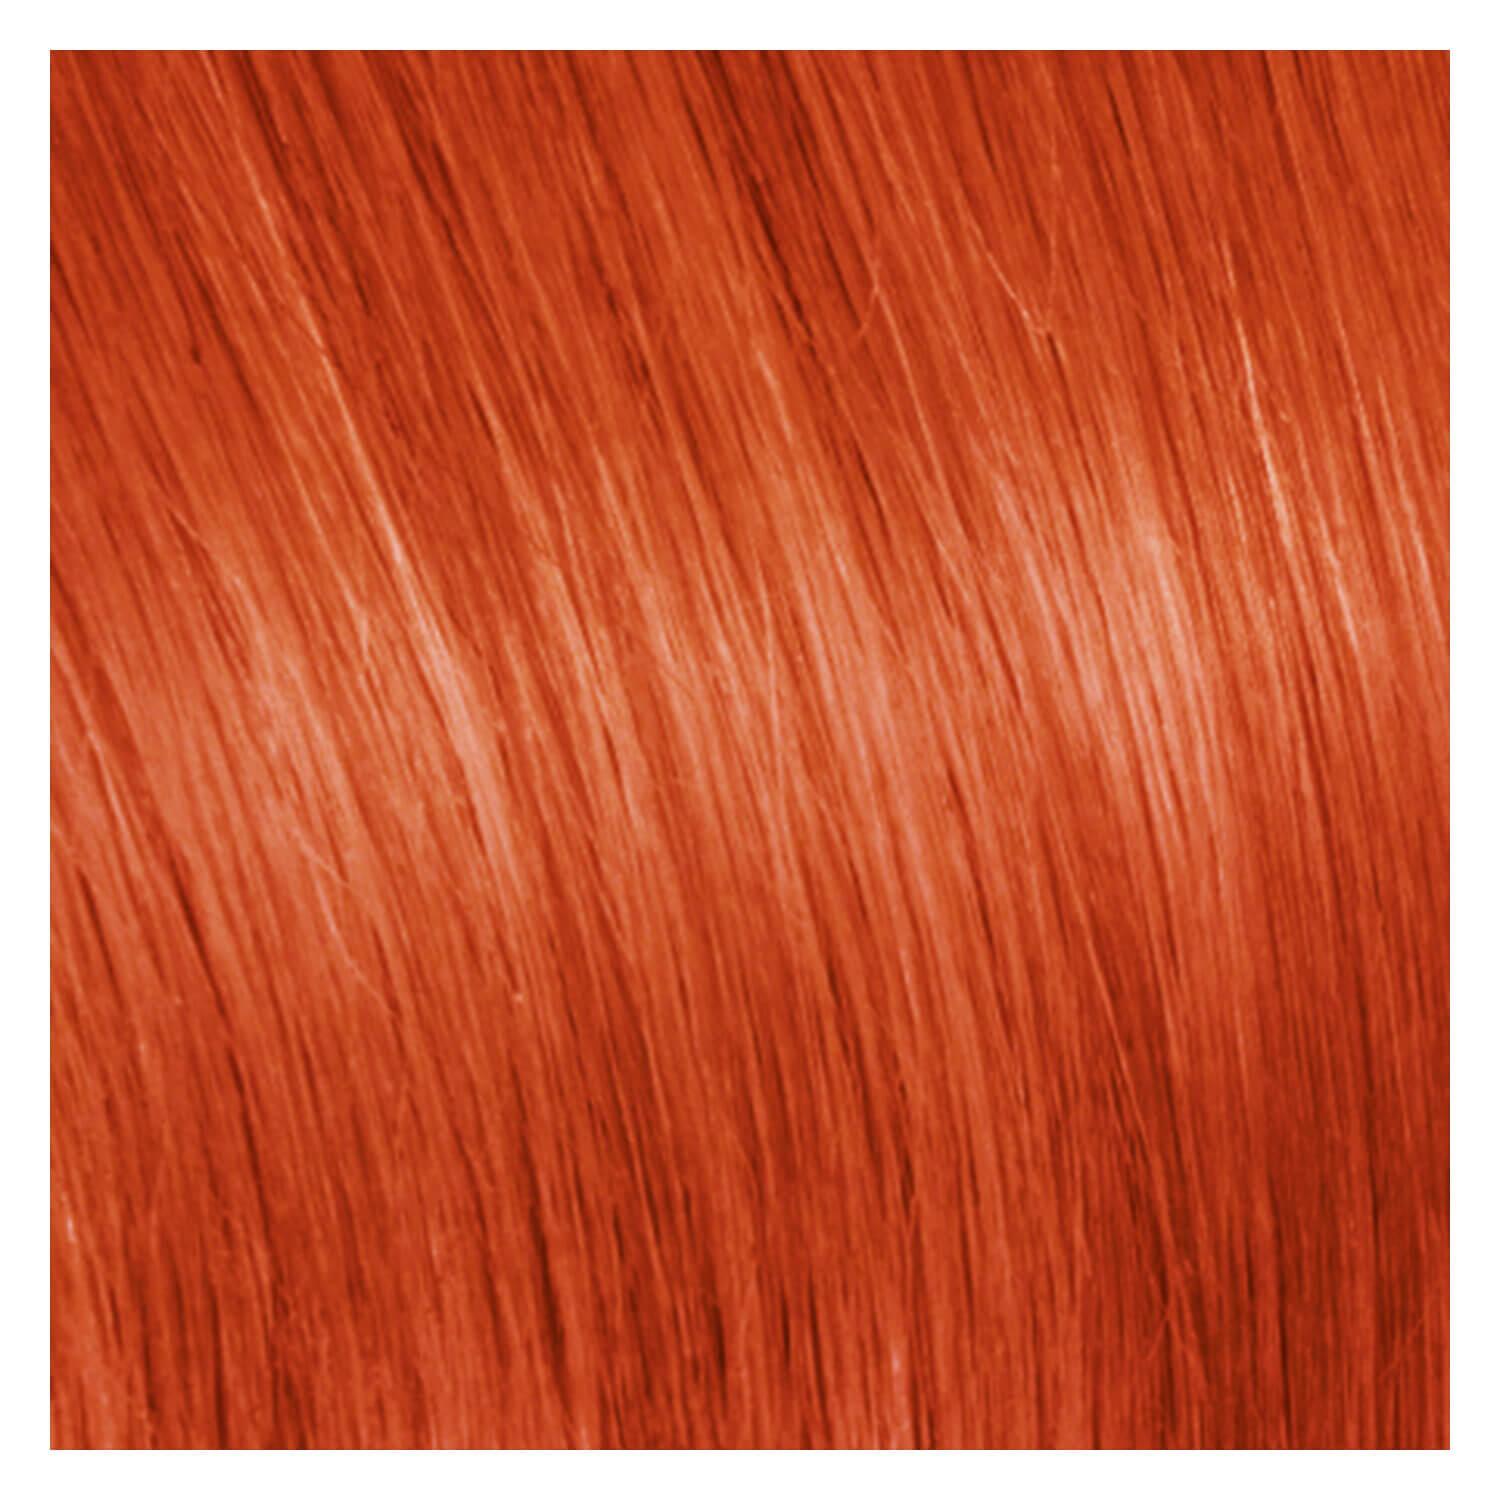 SHE Bonding-System Hair Extensions Fantasy Straight - Dark Orange 55/60cm